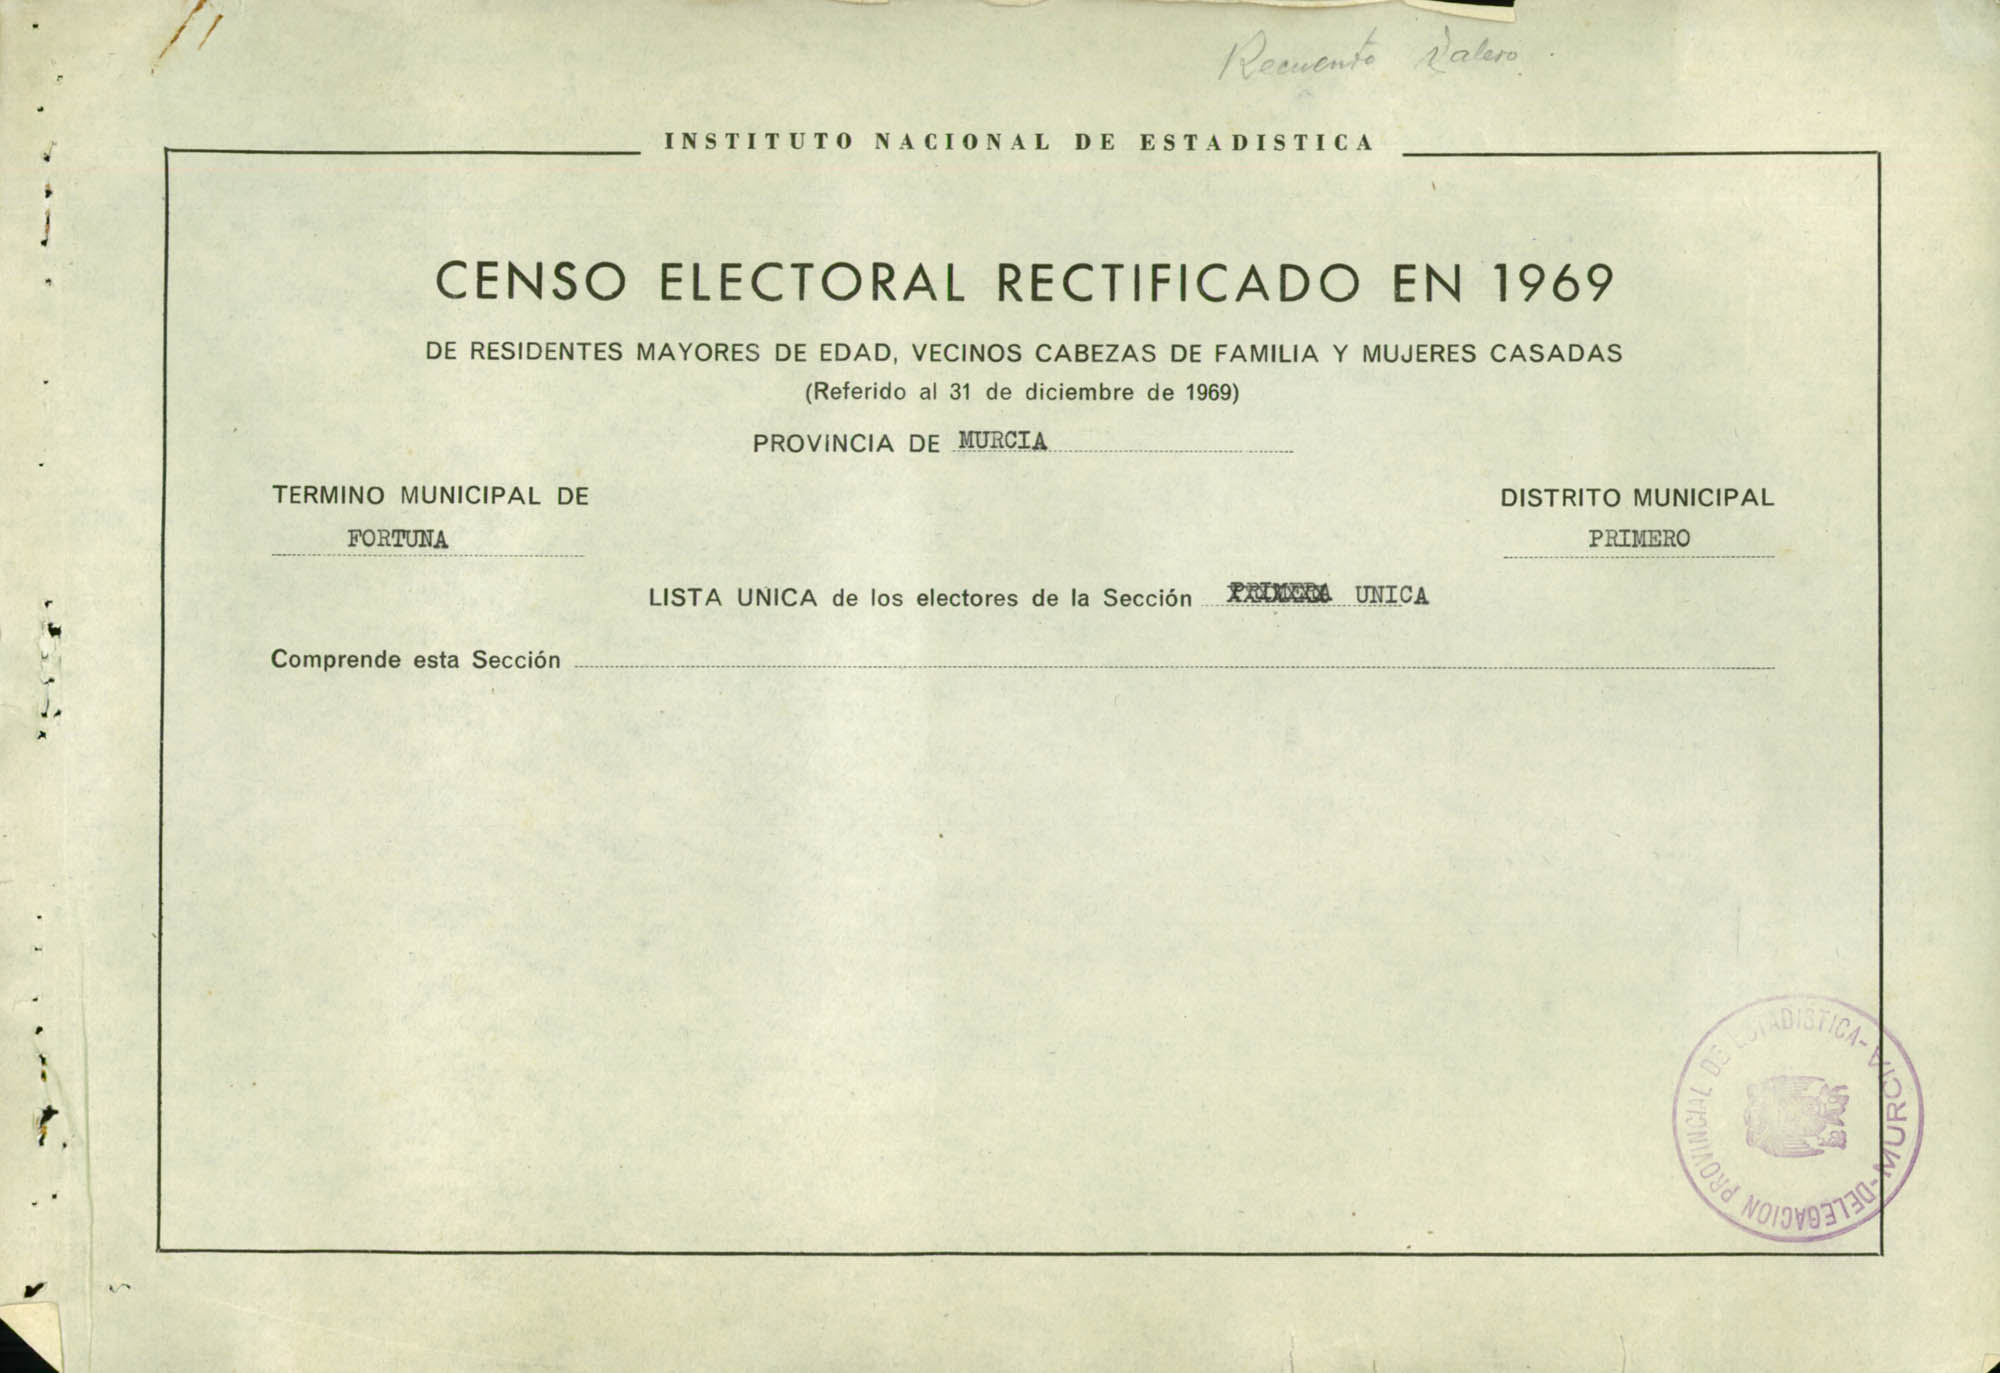 Censo electoral rectificado en 1969: listas definitivas de Fortuna, Distrito Unico, sección 1ª.